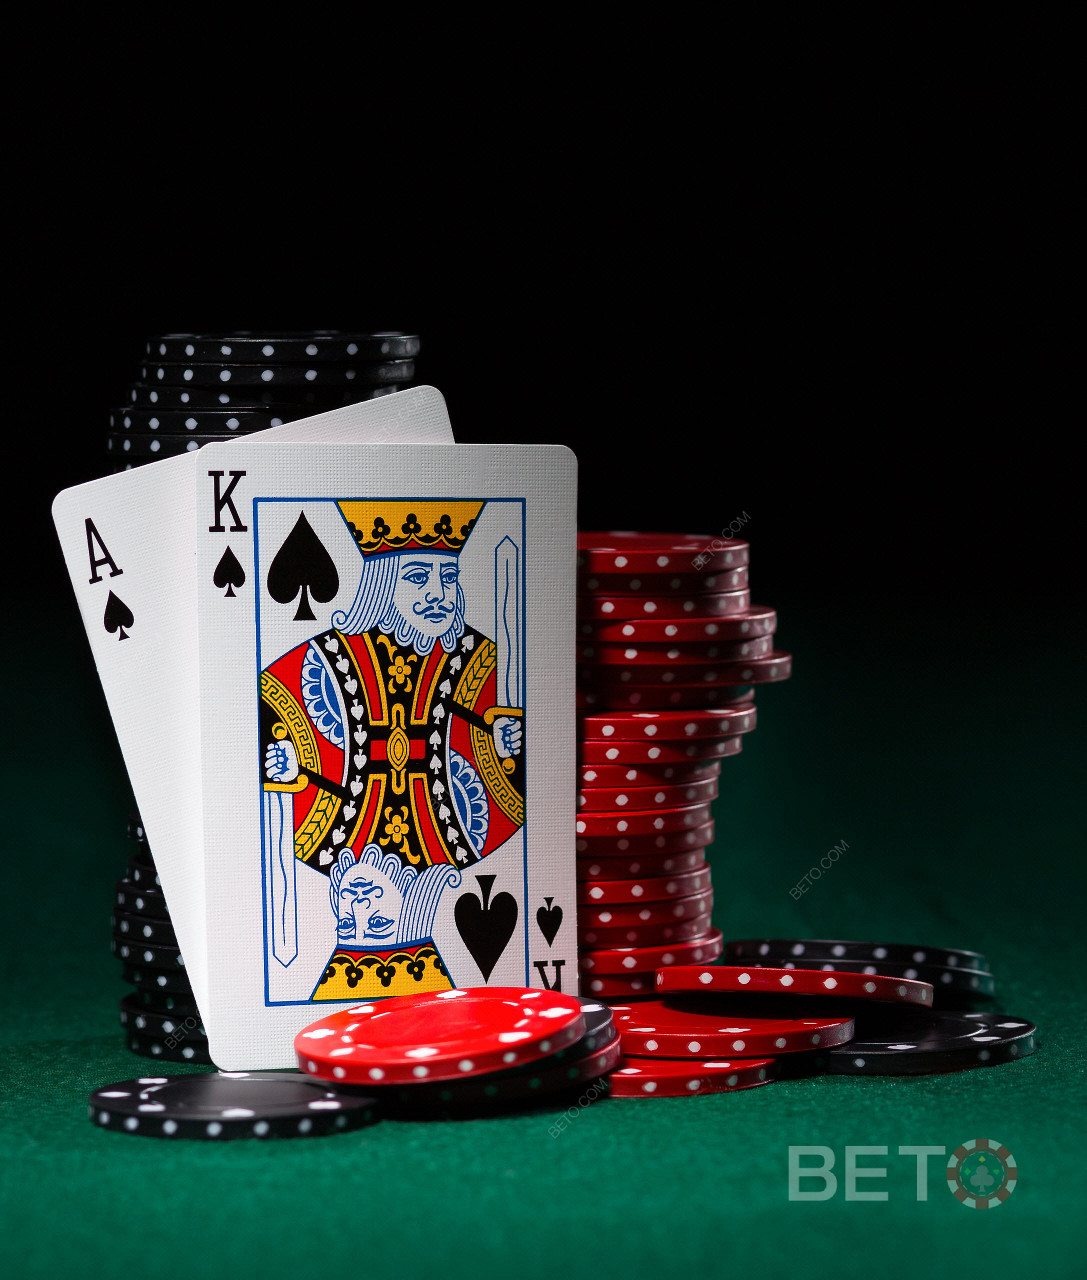 Des jeux de vidéo poker et des jeux de cartes sont également disponibles chez BitStarz.